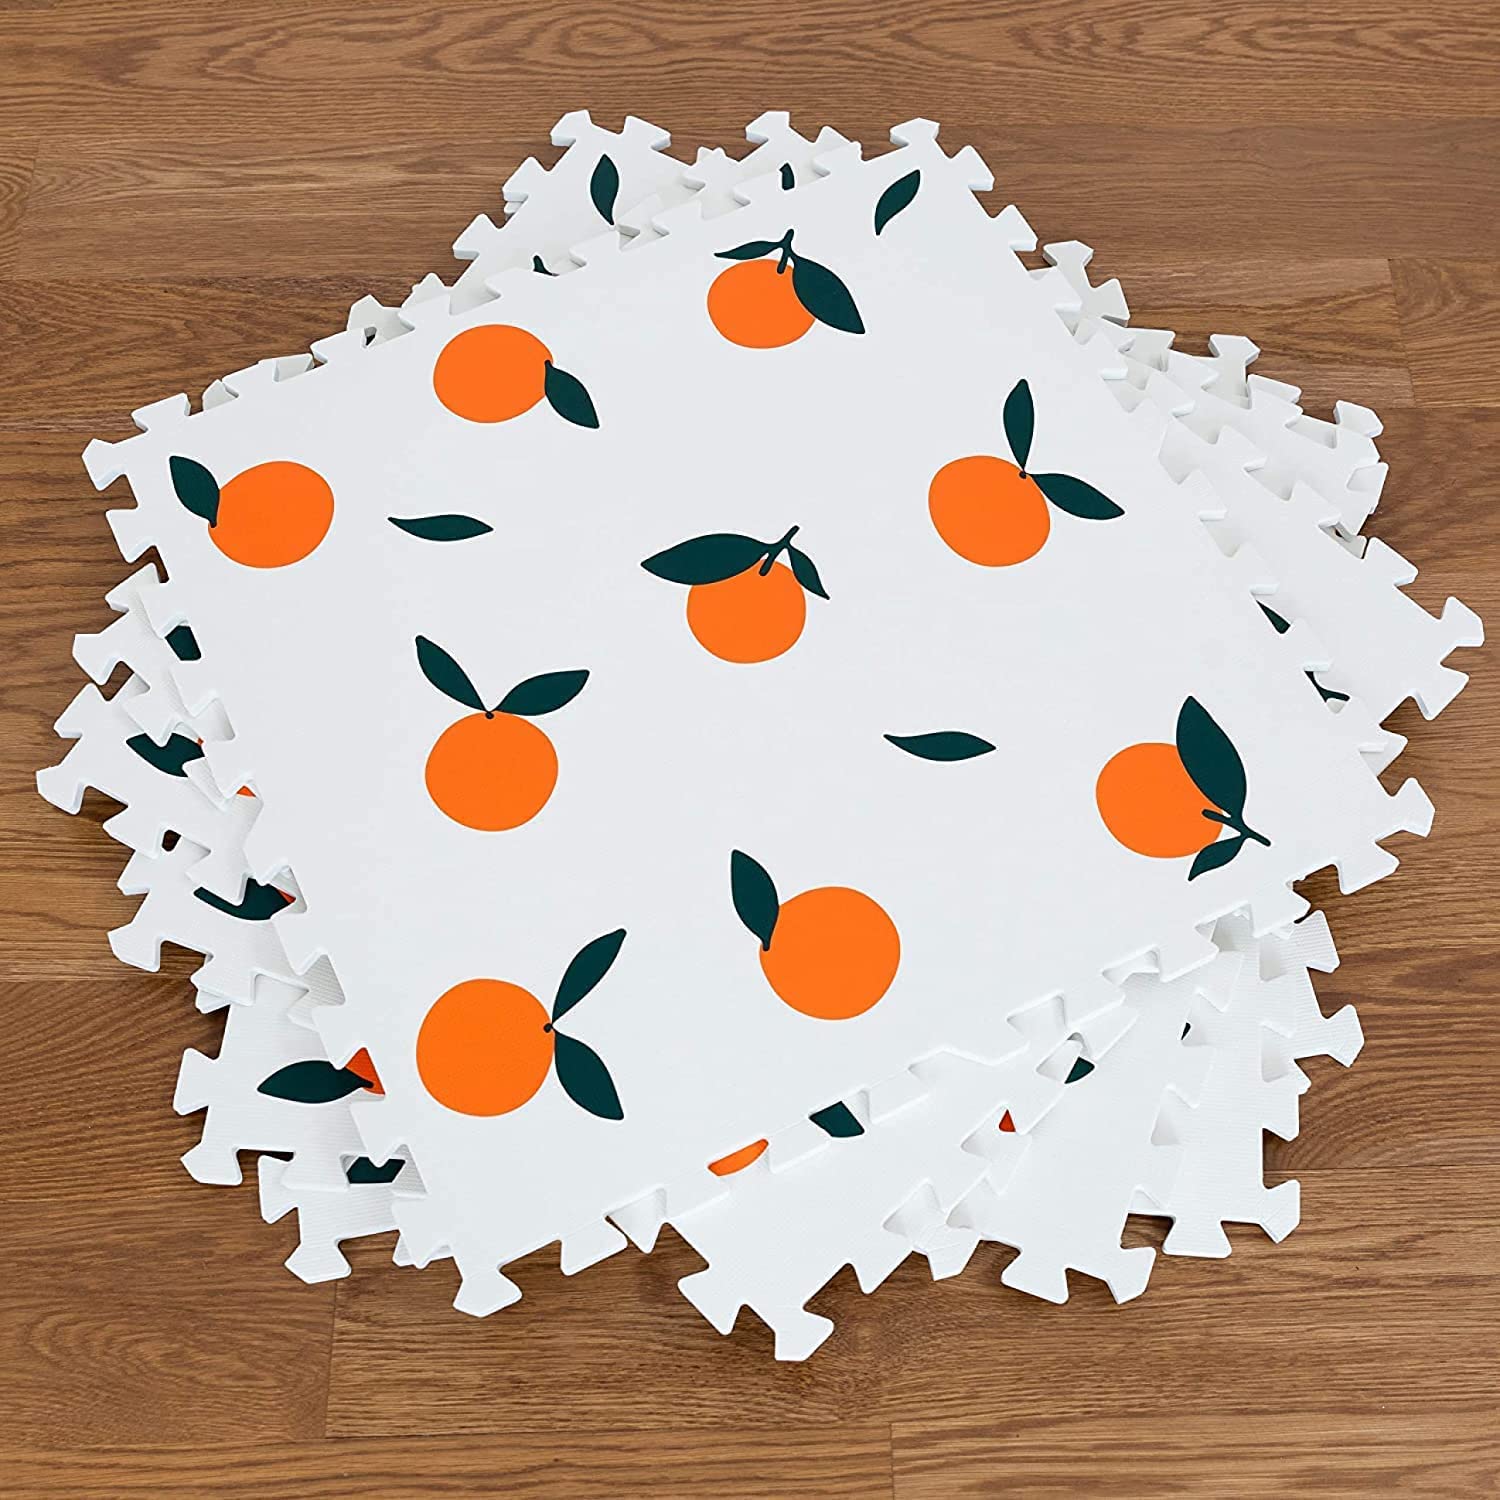 Tuiles de puzzle de tapis de jeu orange pour enfants - Pack de 6 60x60cm par tuile